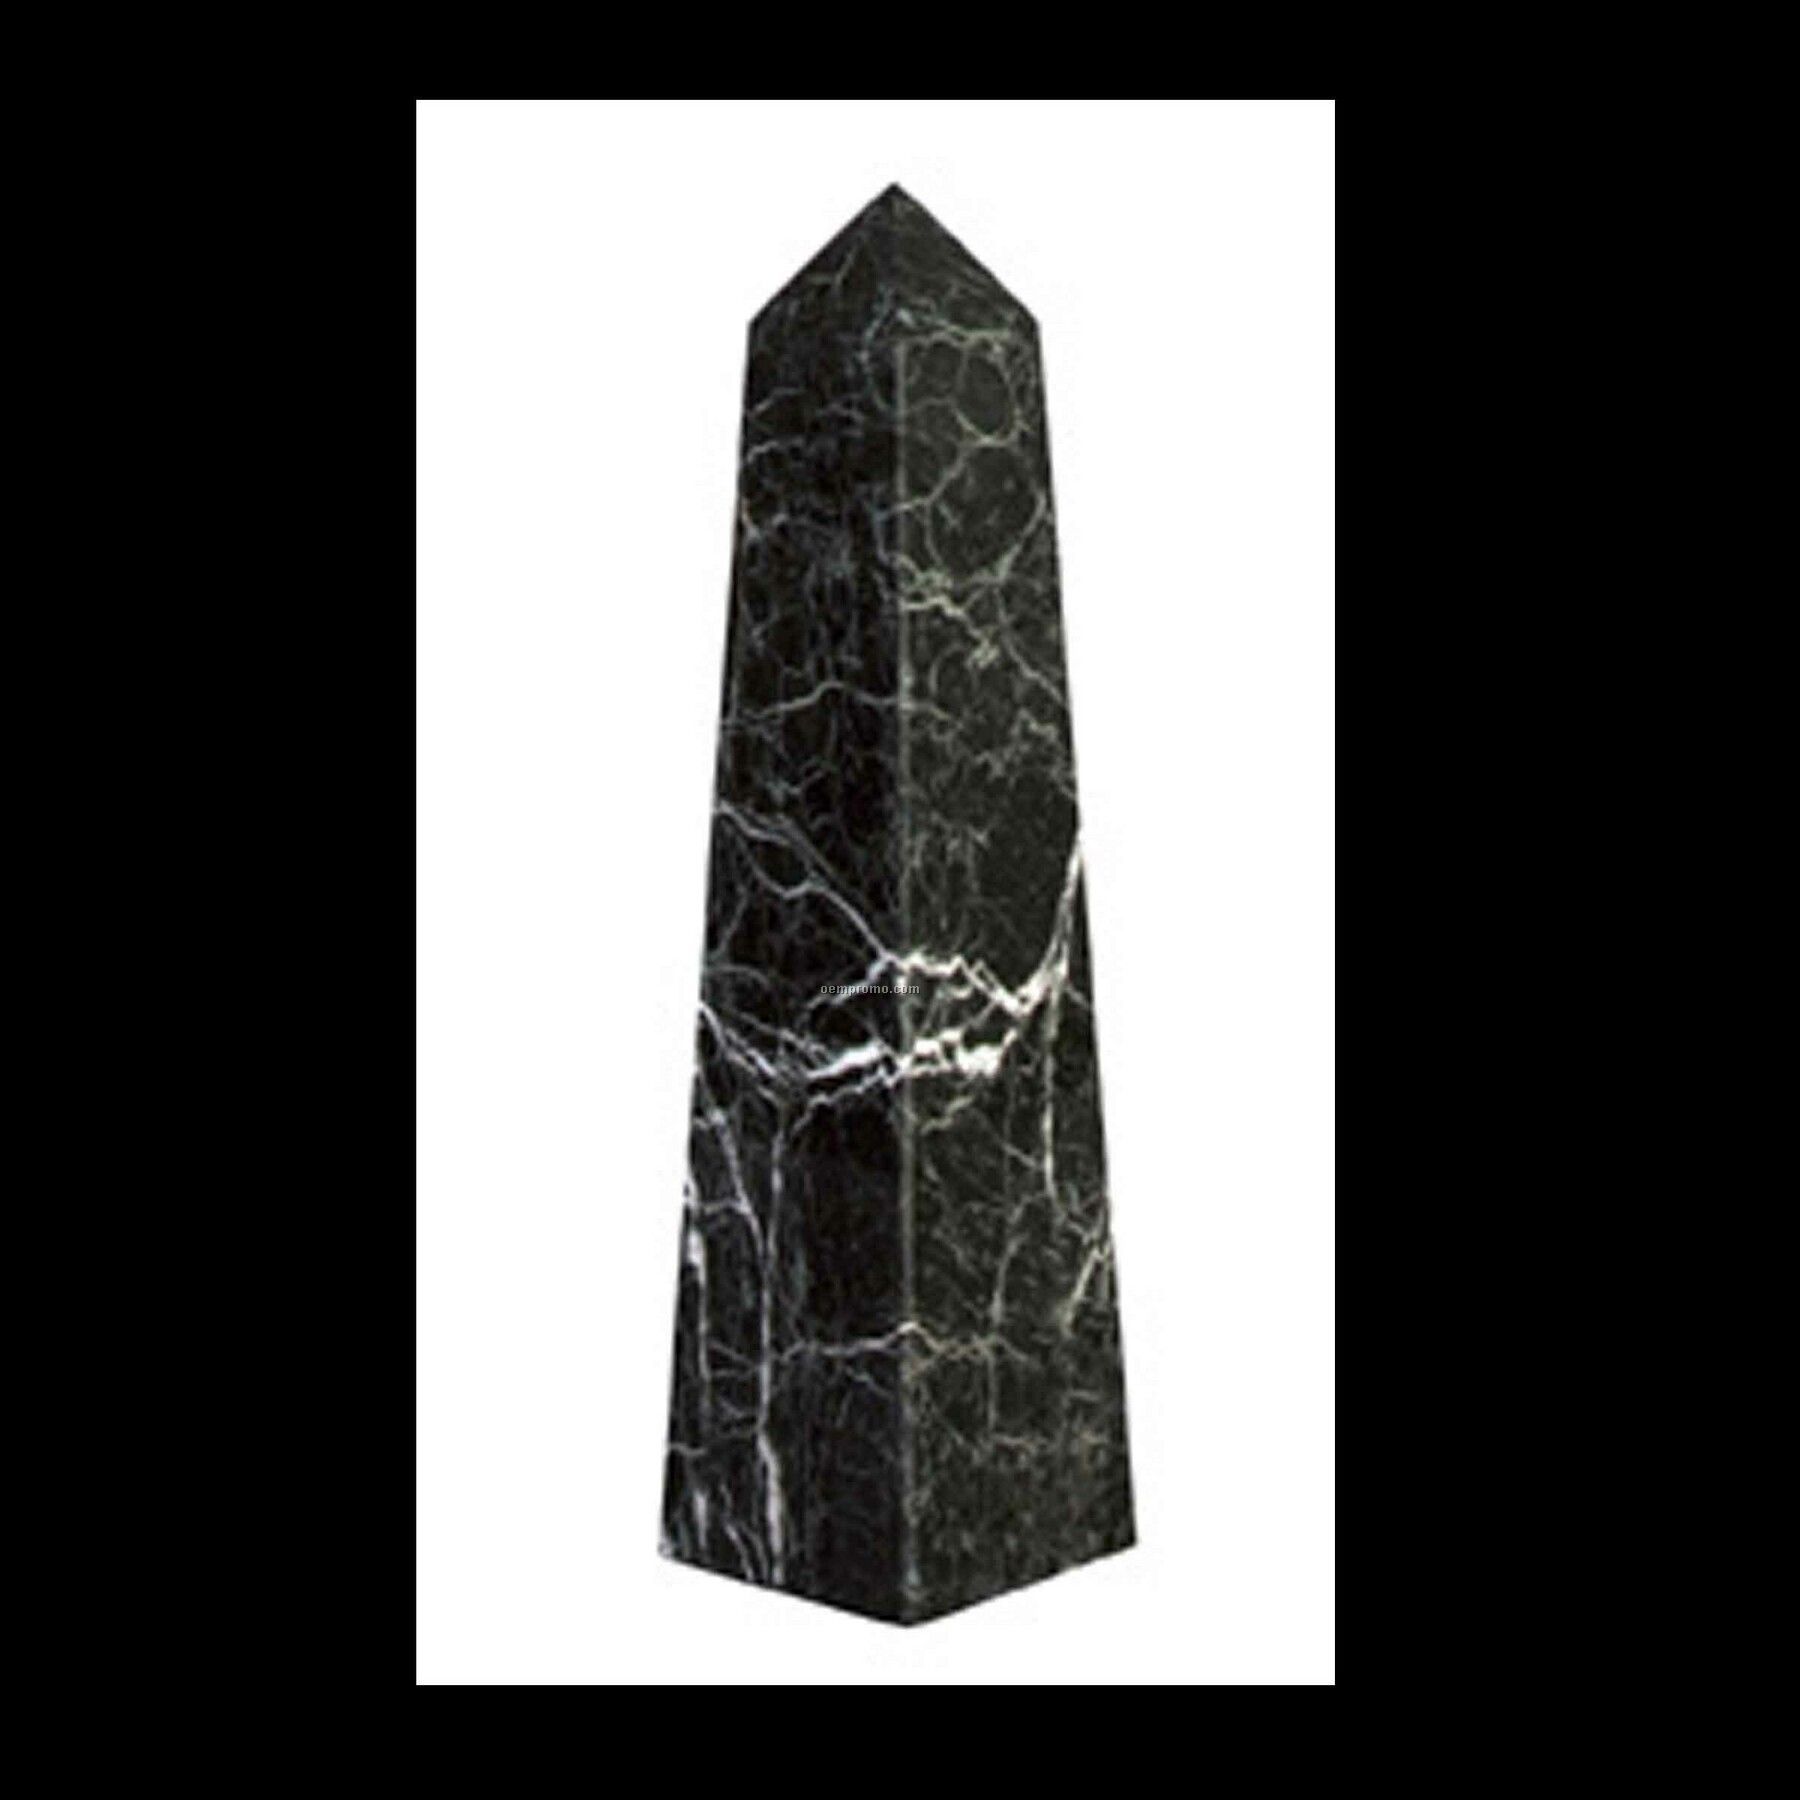 Medium Obelisk Pinnacle Award